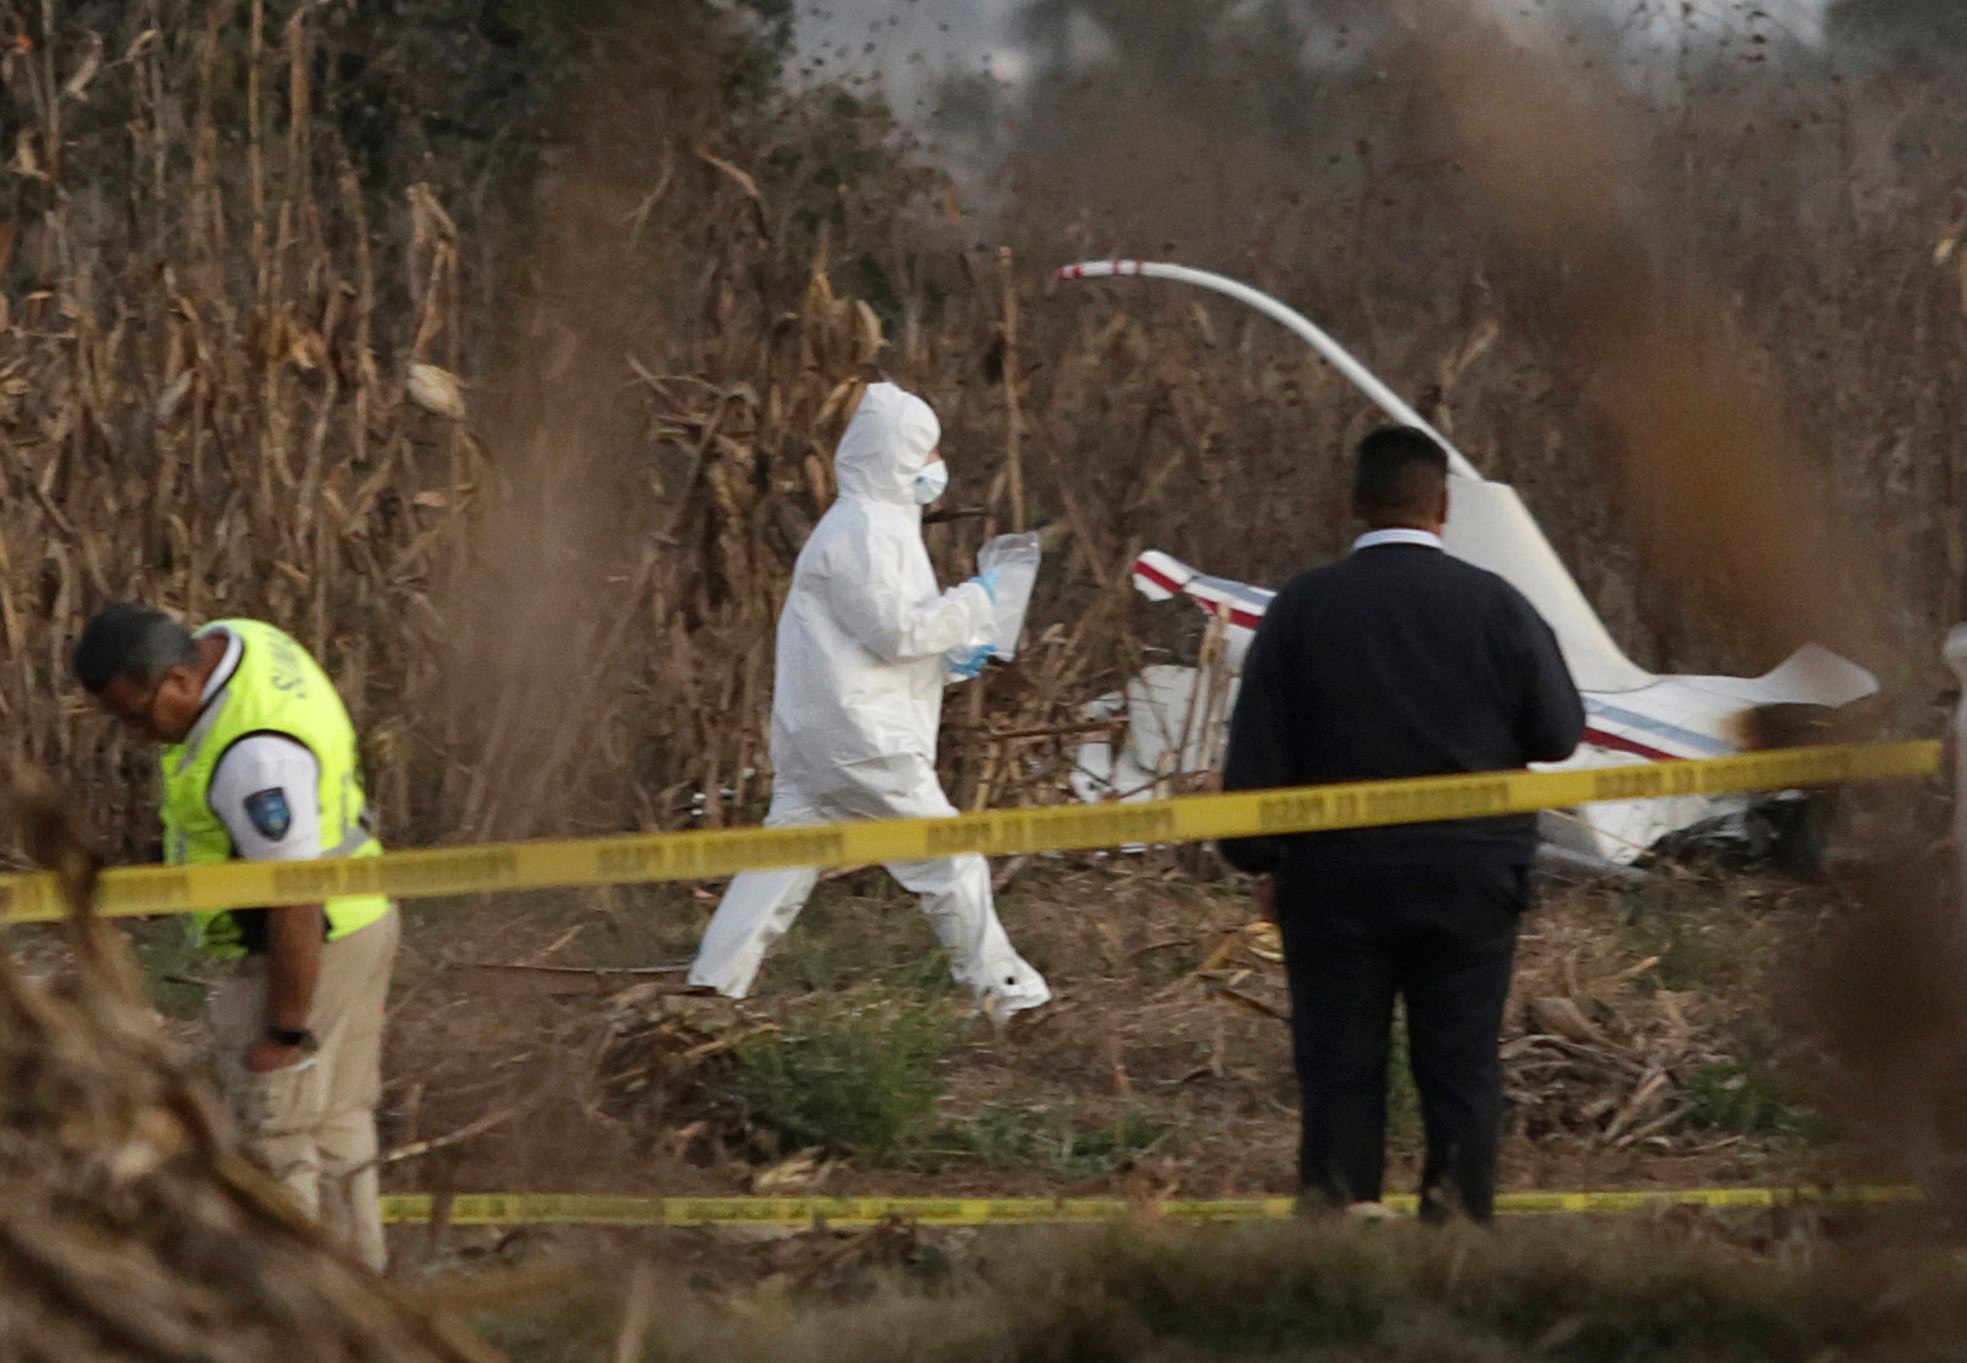  Peritos de Canadá inician investigación de accidente aéreo en Puebla